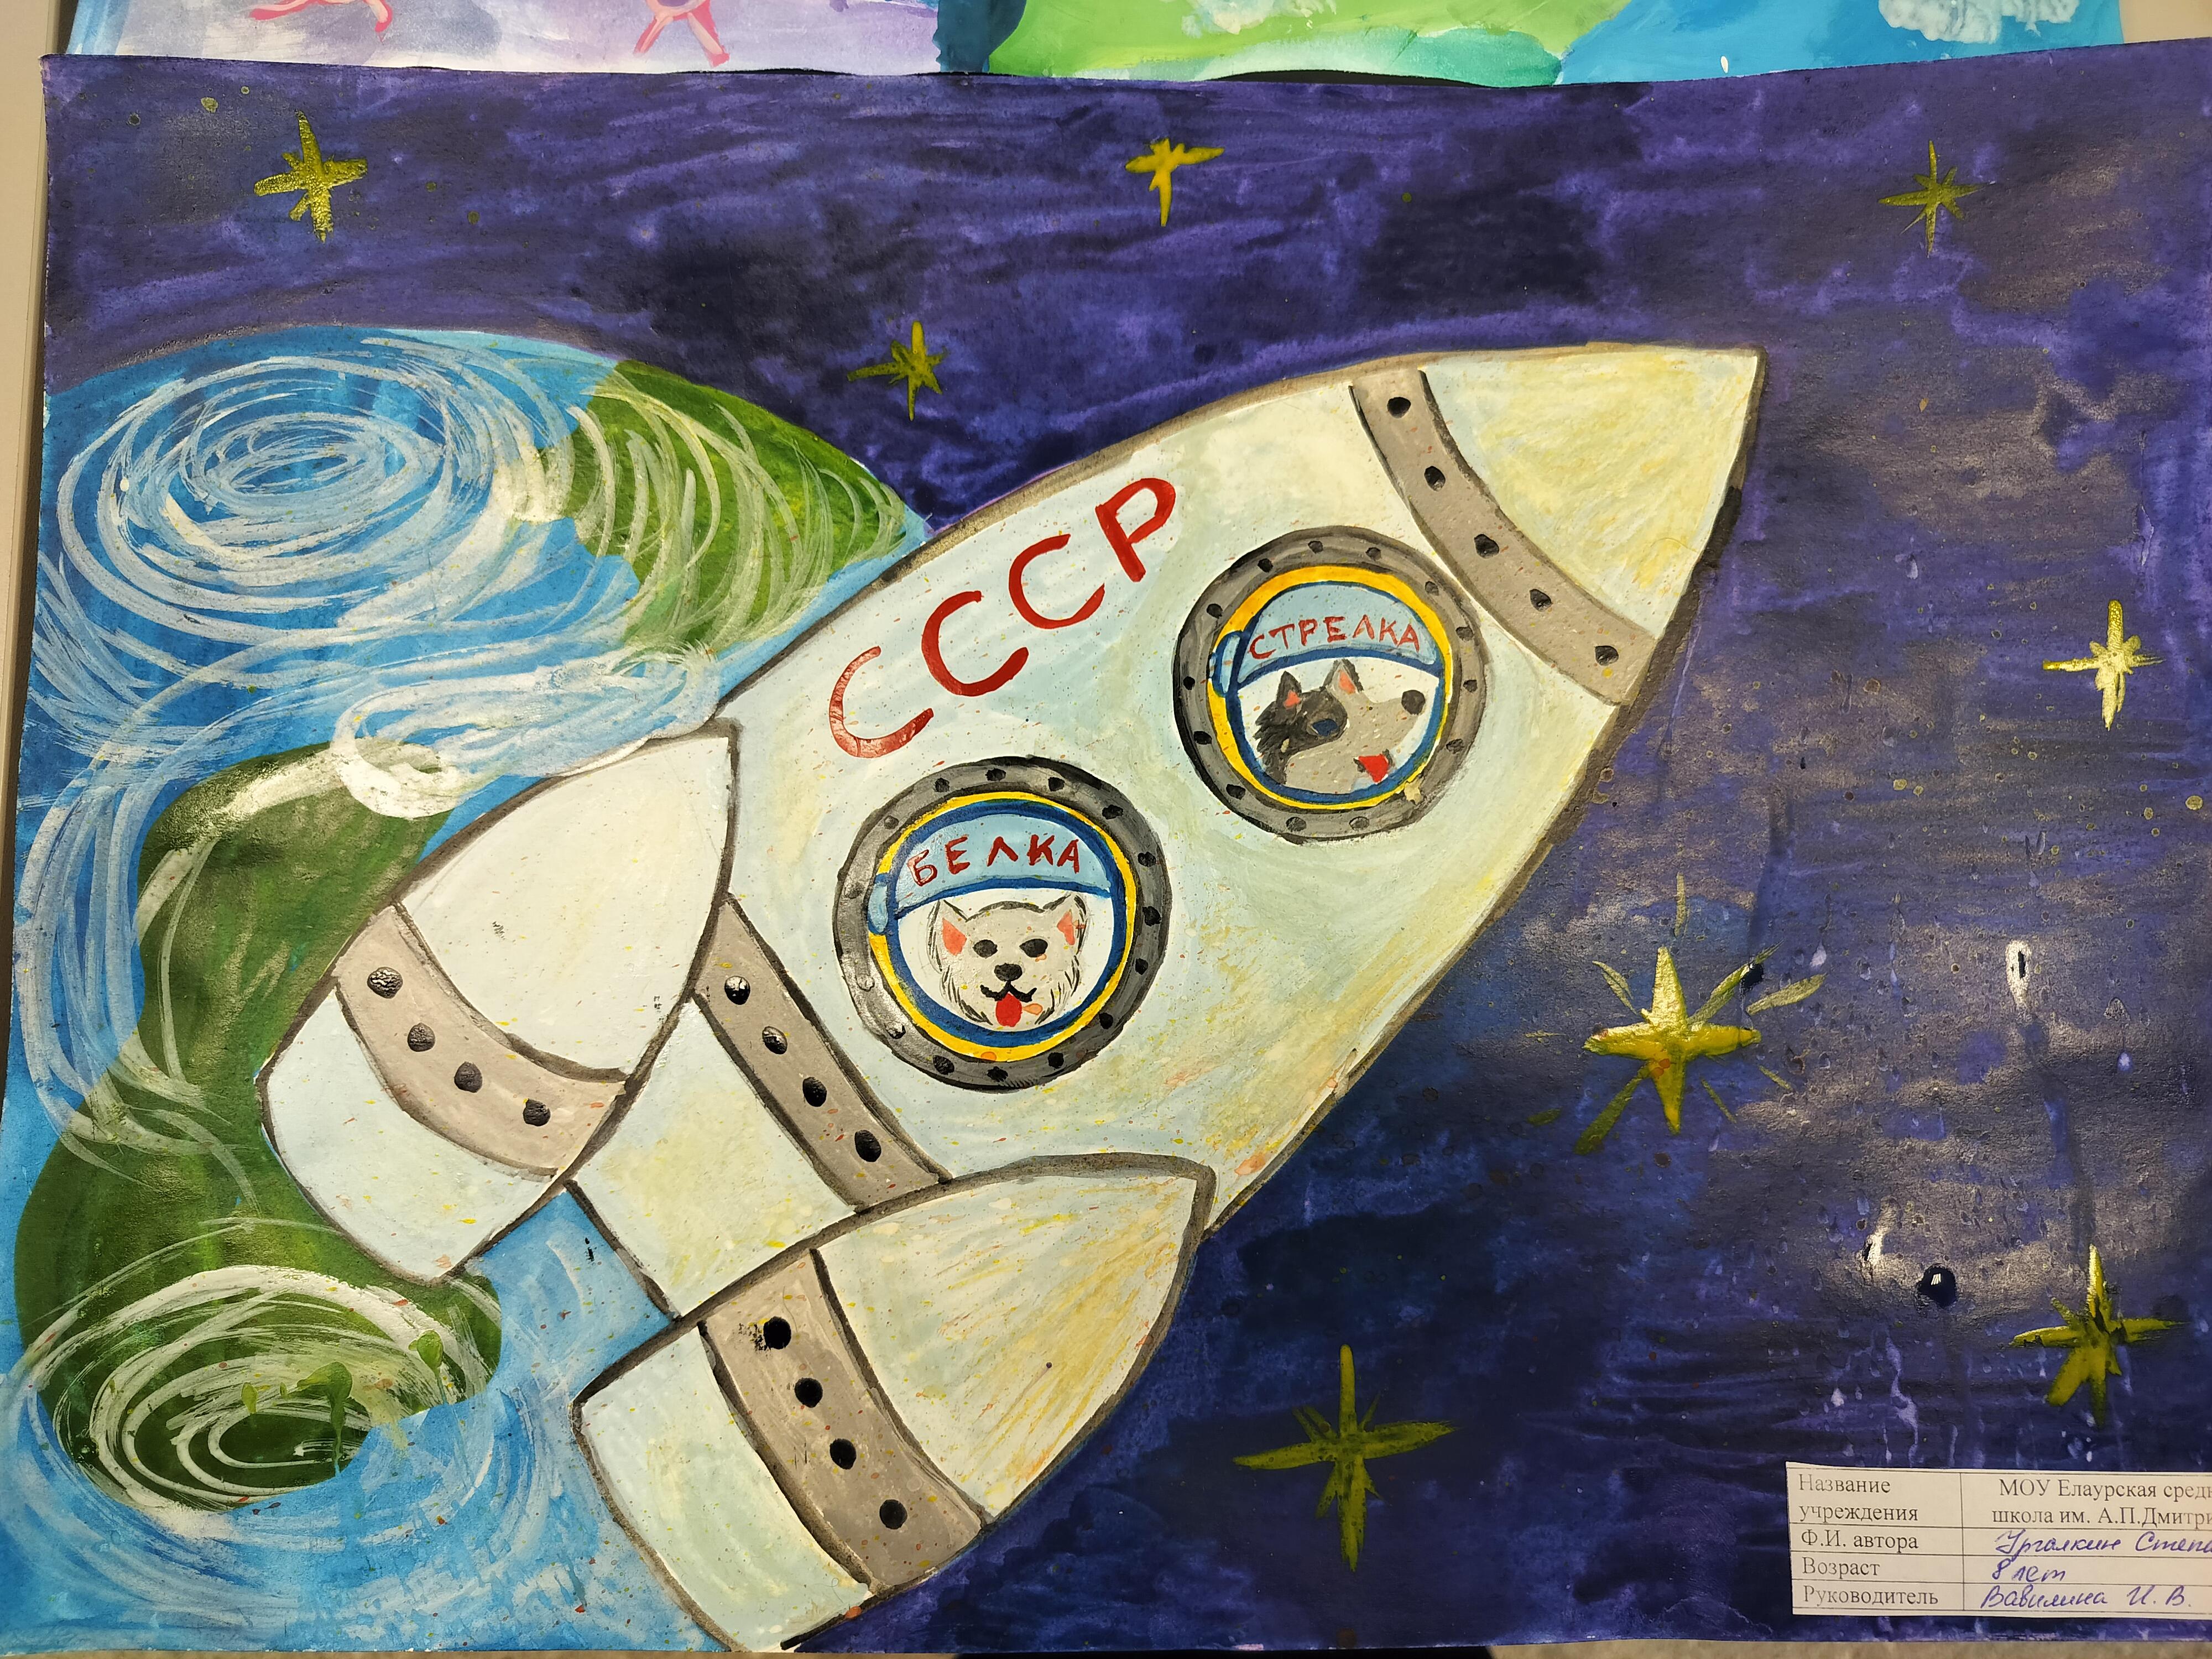 Организовали конкурс рисунков ко Дню космонавтики.